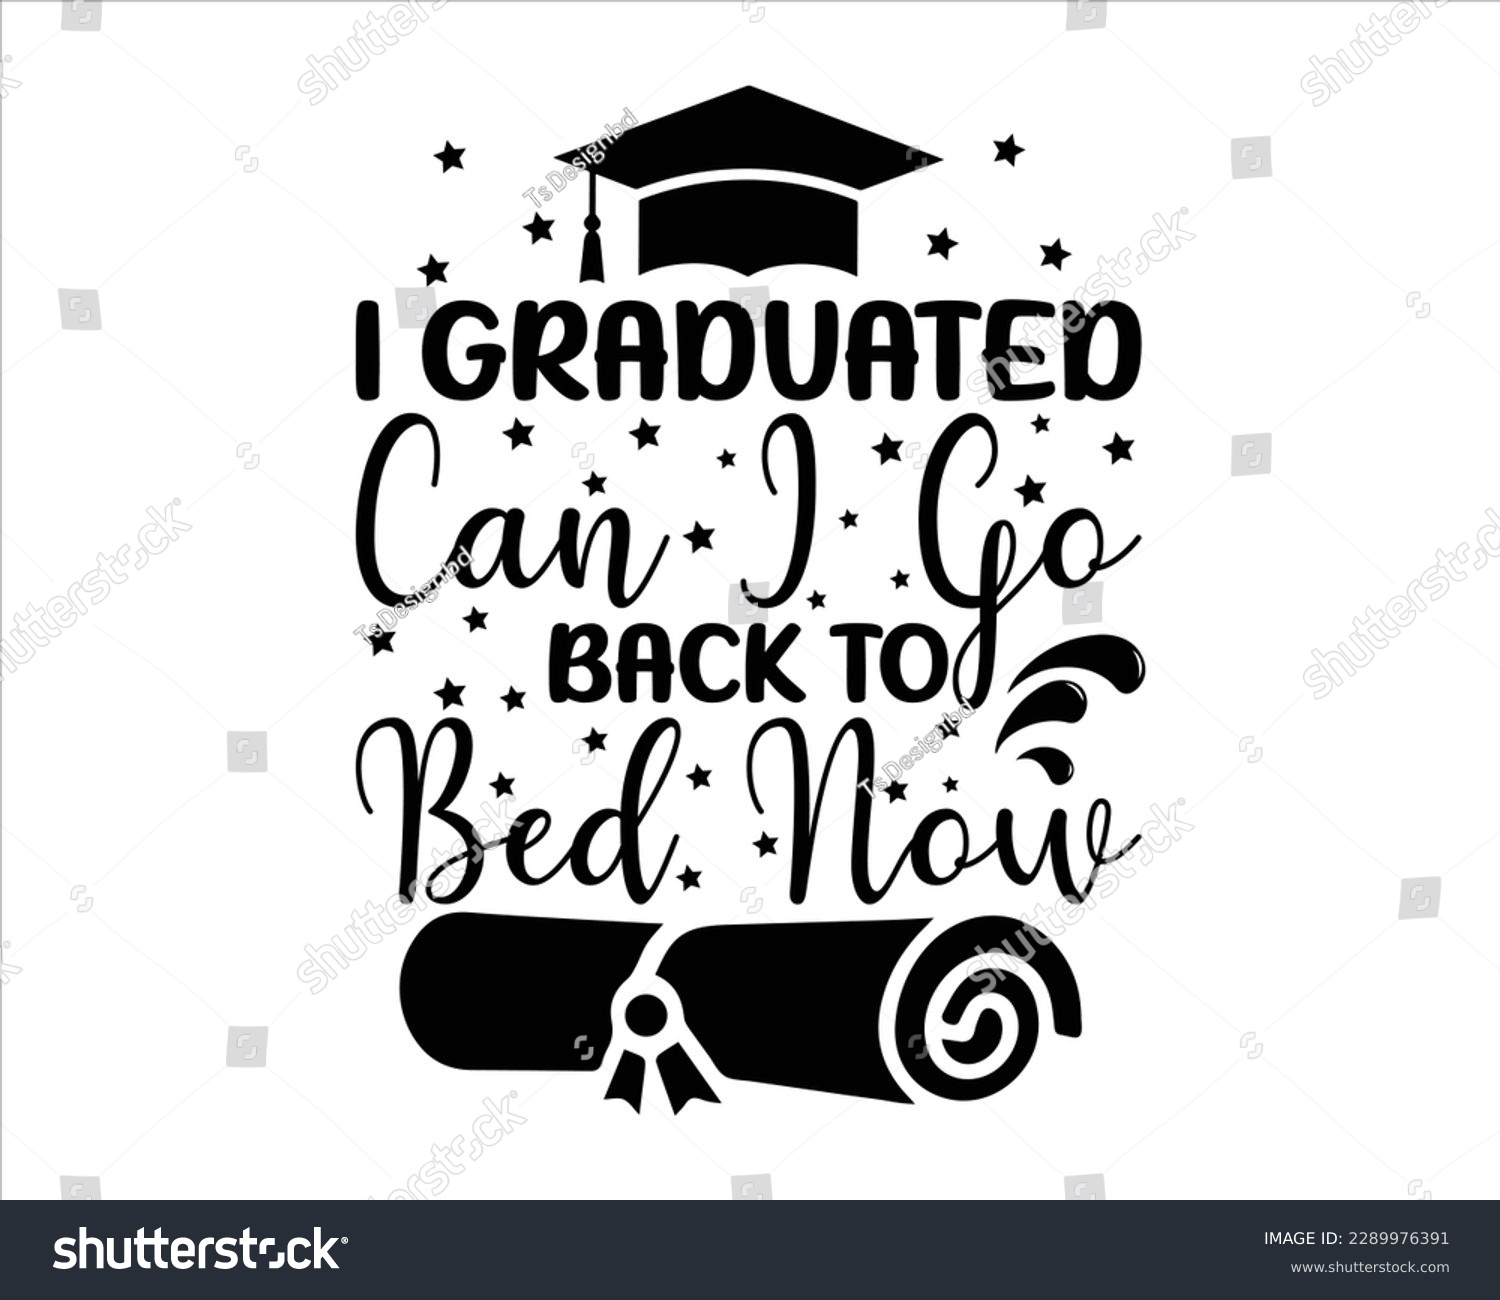 SVG of I Graduated  Can I go Back to Bed Now Svg Design,graduation svg design,Graduation T-shirt Design ,College graduation quotes, congratulations school symbols,Student graduate badges, Congrats grad svg